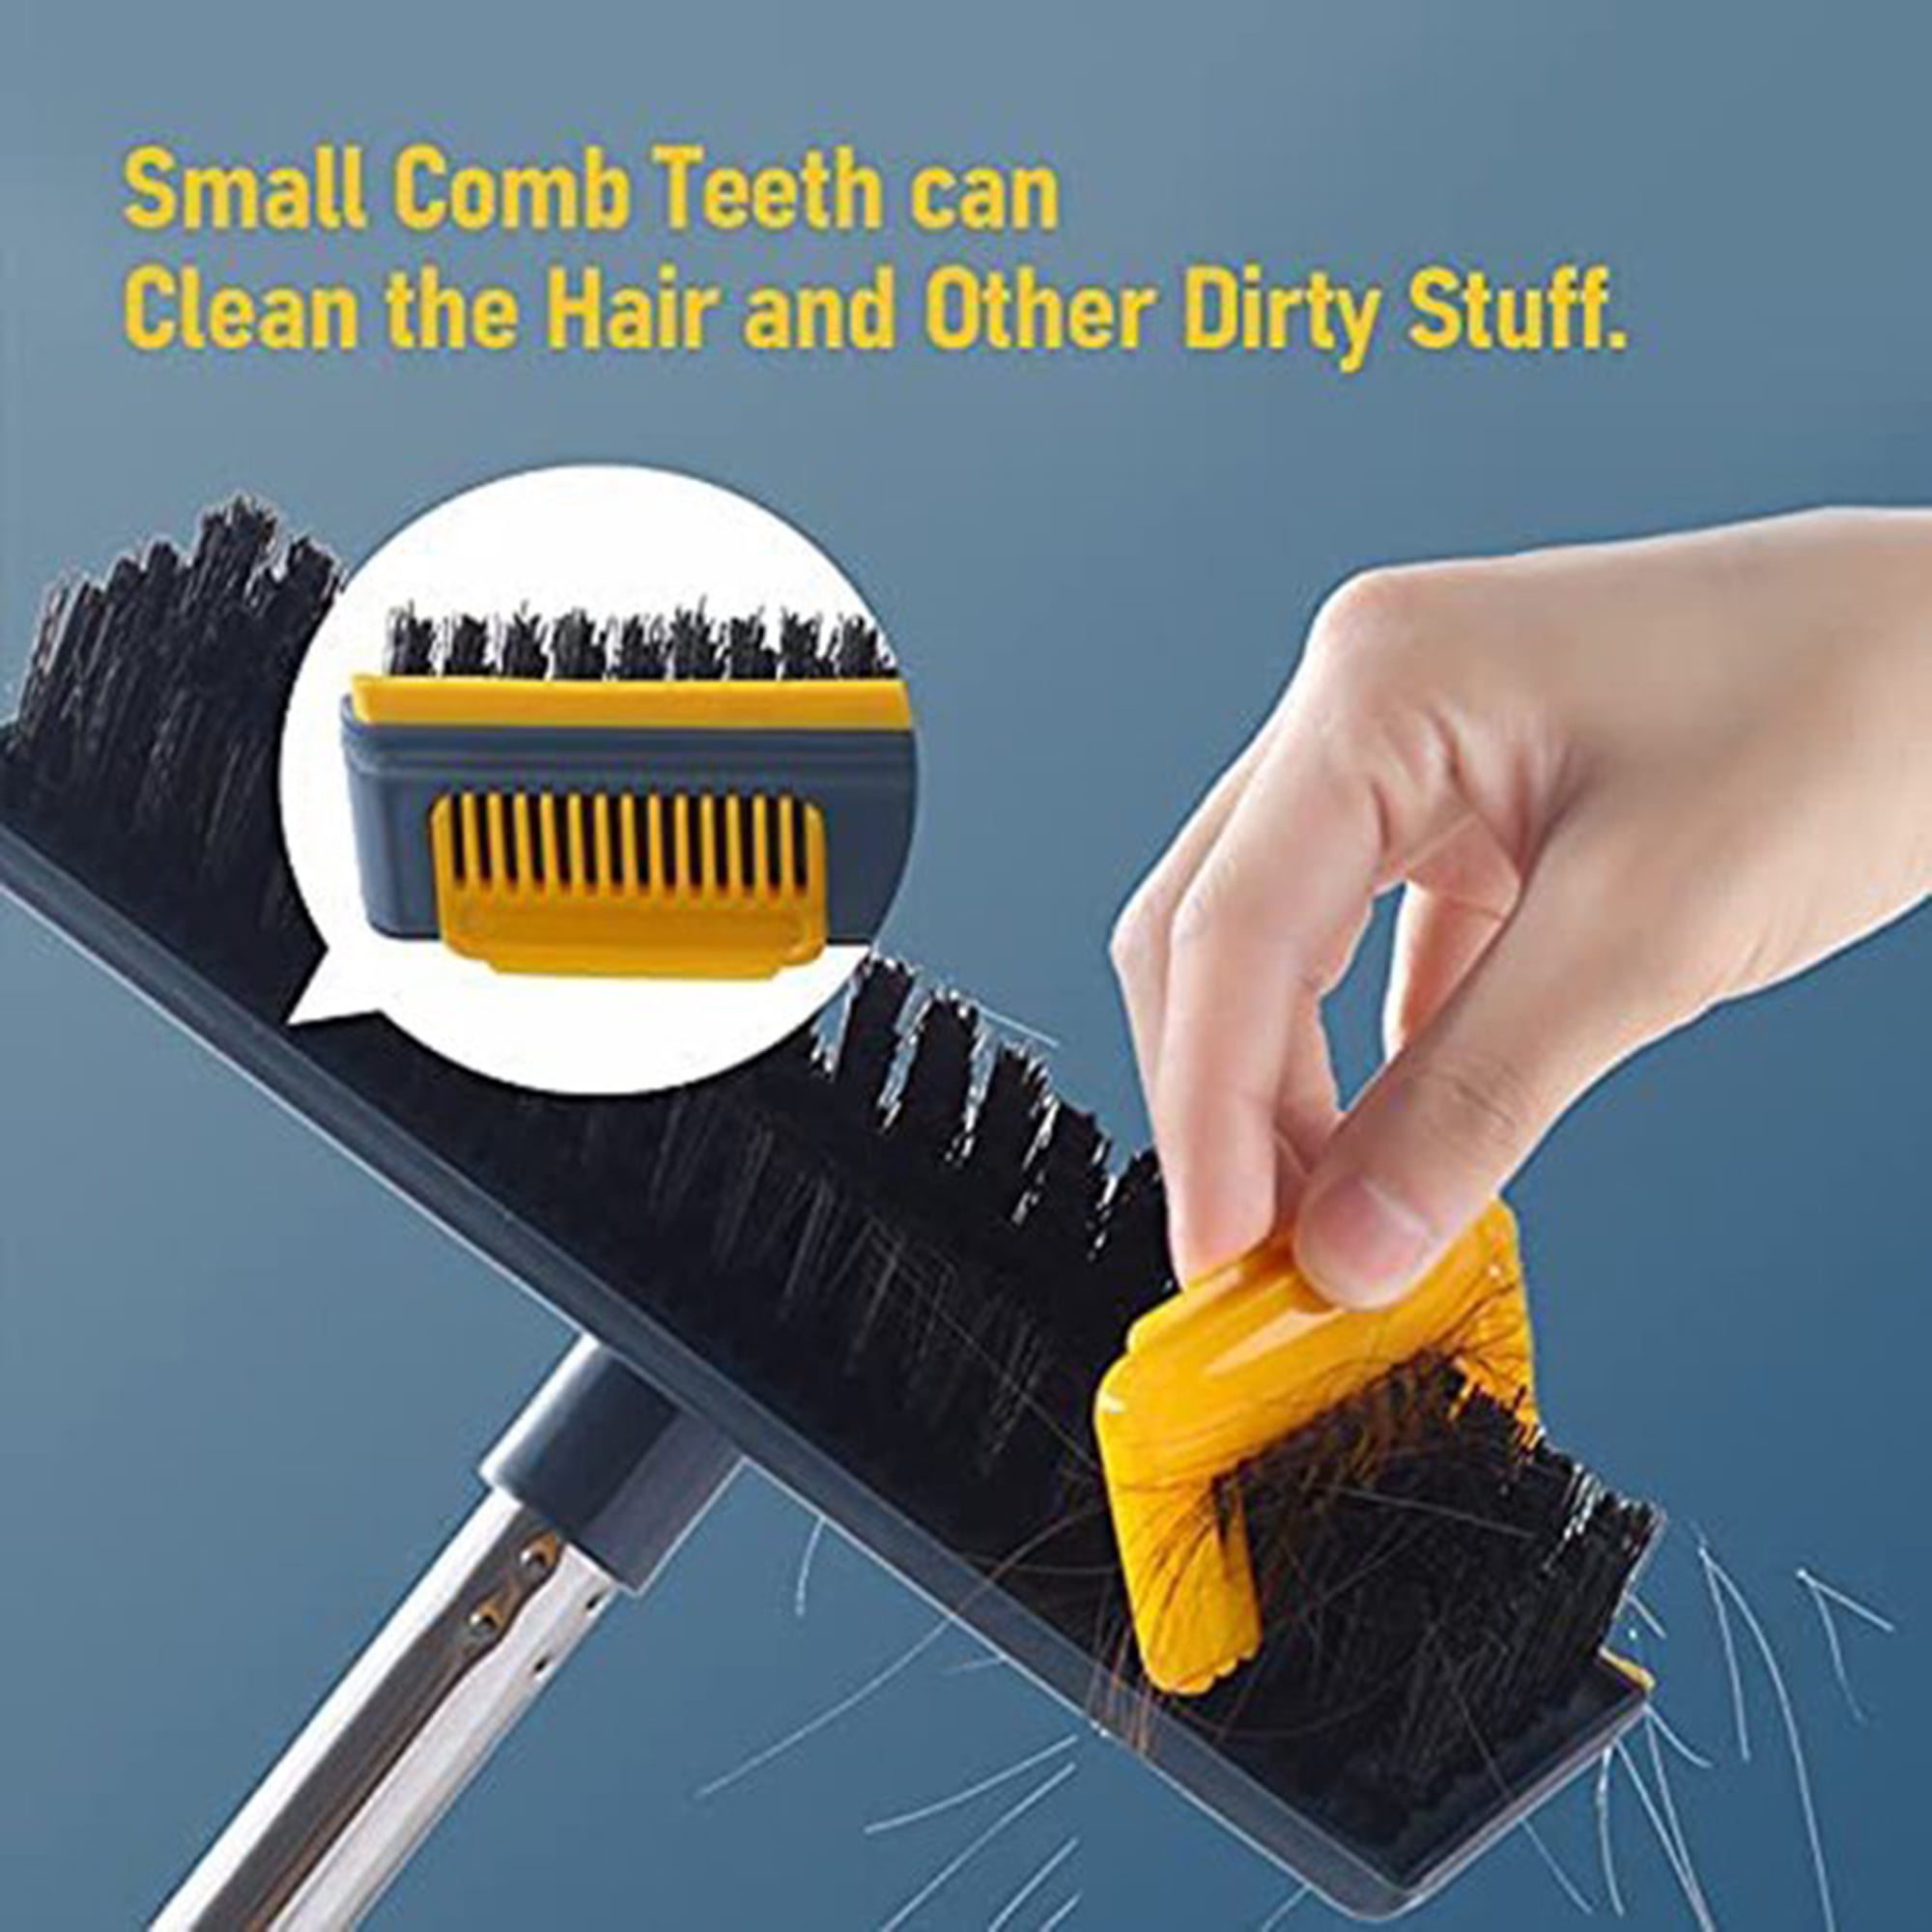 O Cedar 122872 Swivel Scrub Brush: Deck Scrub and Threaded Handle Brushes  (041785046258-2)